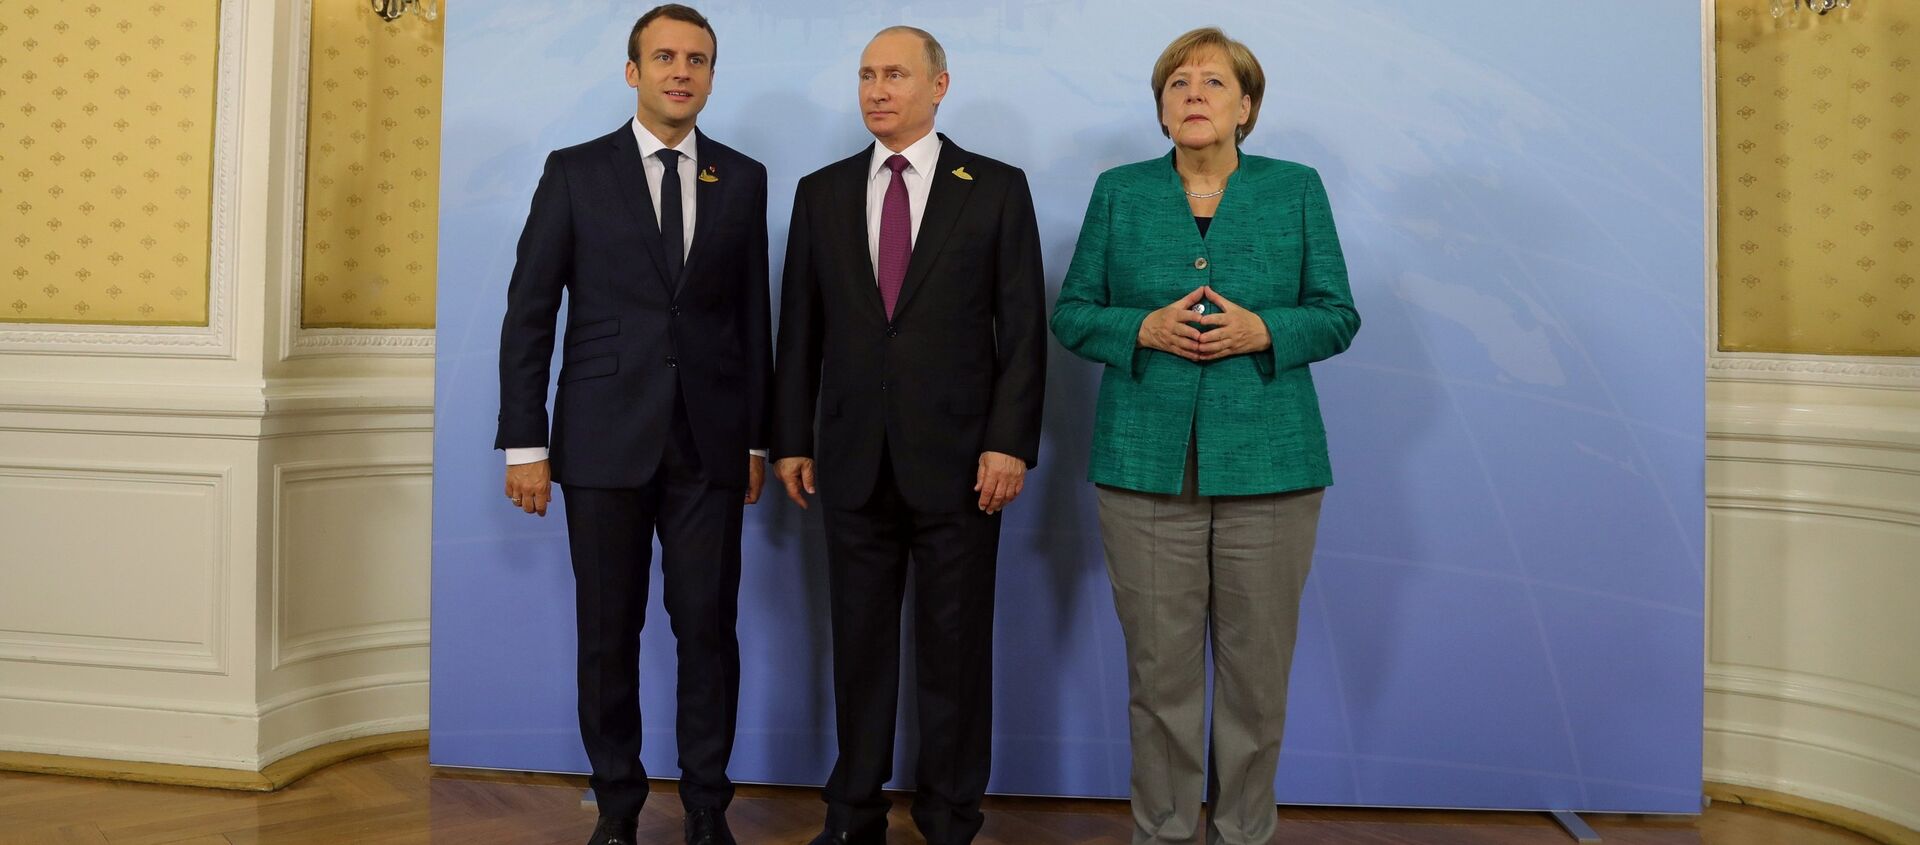 Președintele rus Vladimir Putin a avut la summit-ul G20 de la Hamburg o întâlnire cu preșeintele francez Emmanuel Macron și cu cancelarul german Angela Merkel - Sputnik Moldova, 1920, 25.06.2021